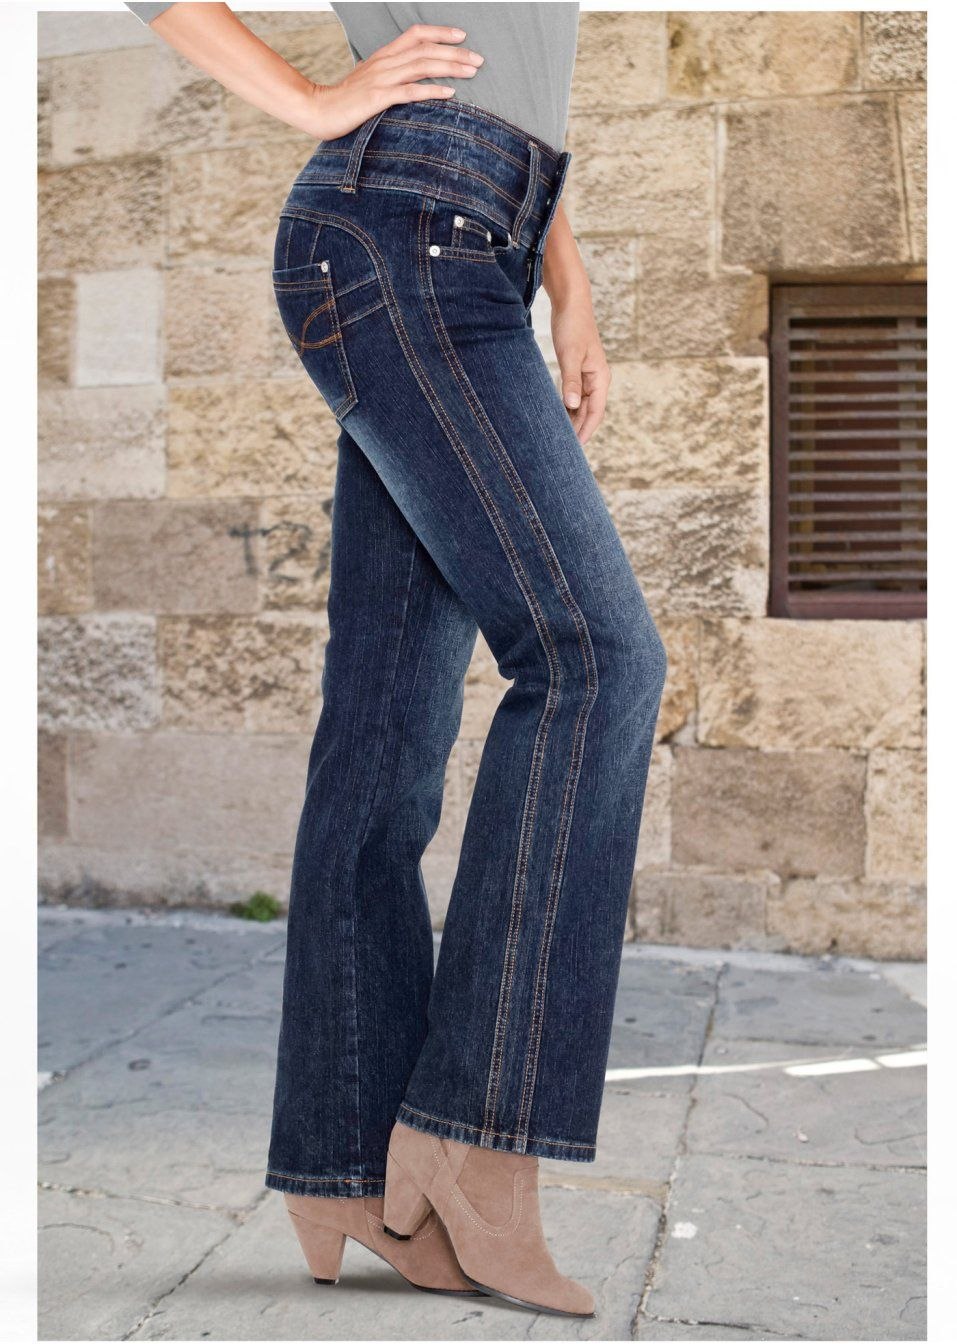 Расширить джинсовую. Перешить джинсы. Переделка джинсовых брюк в джинсы. Вставки в джинсы по боковому шву. Джинсы с боковыми вставками.